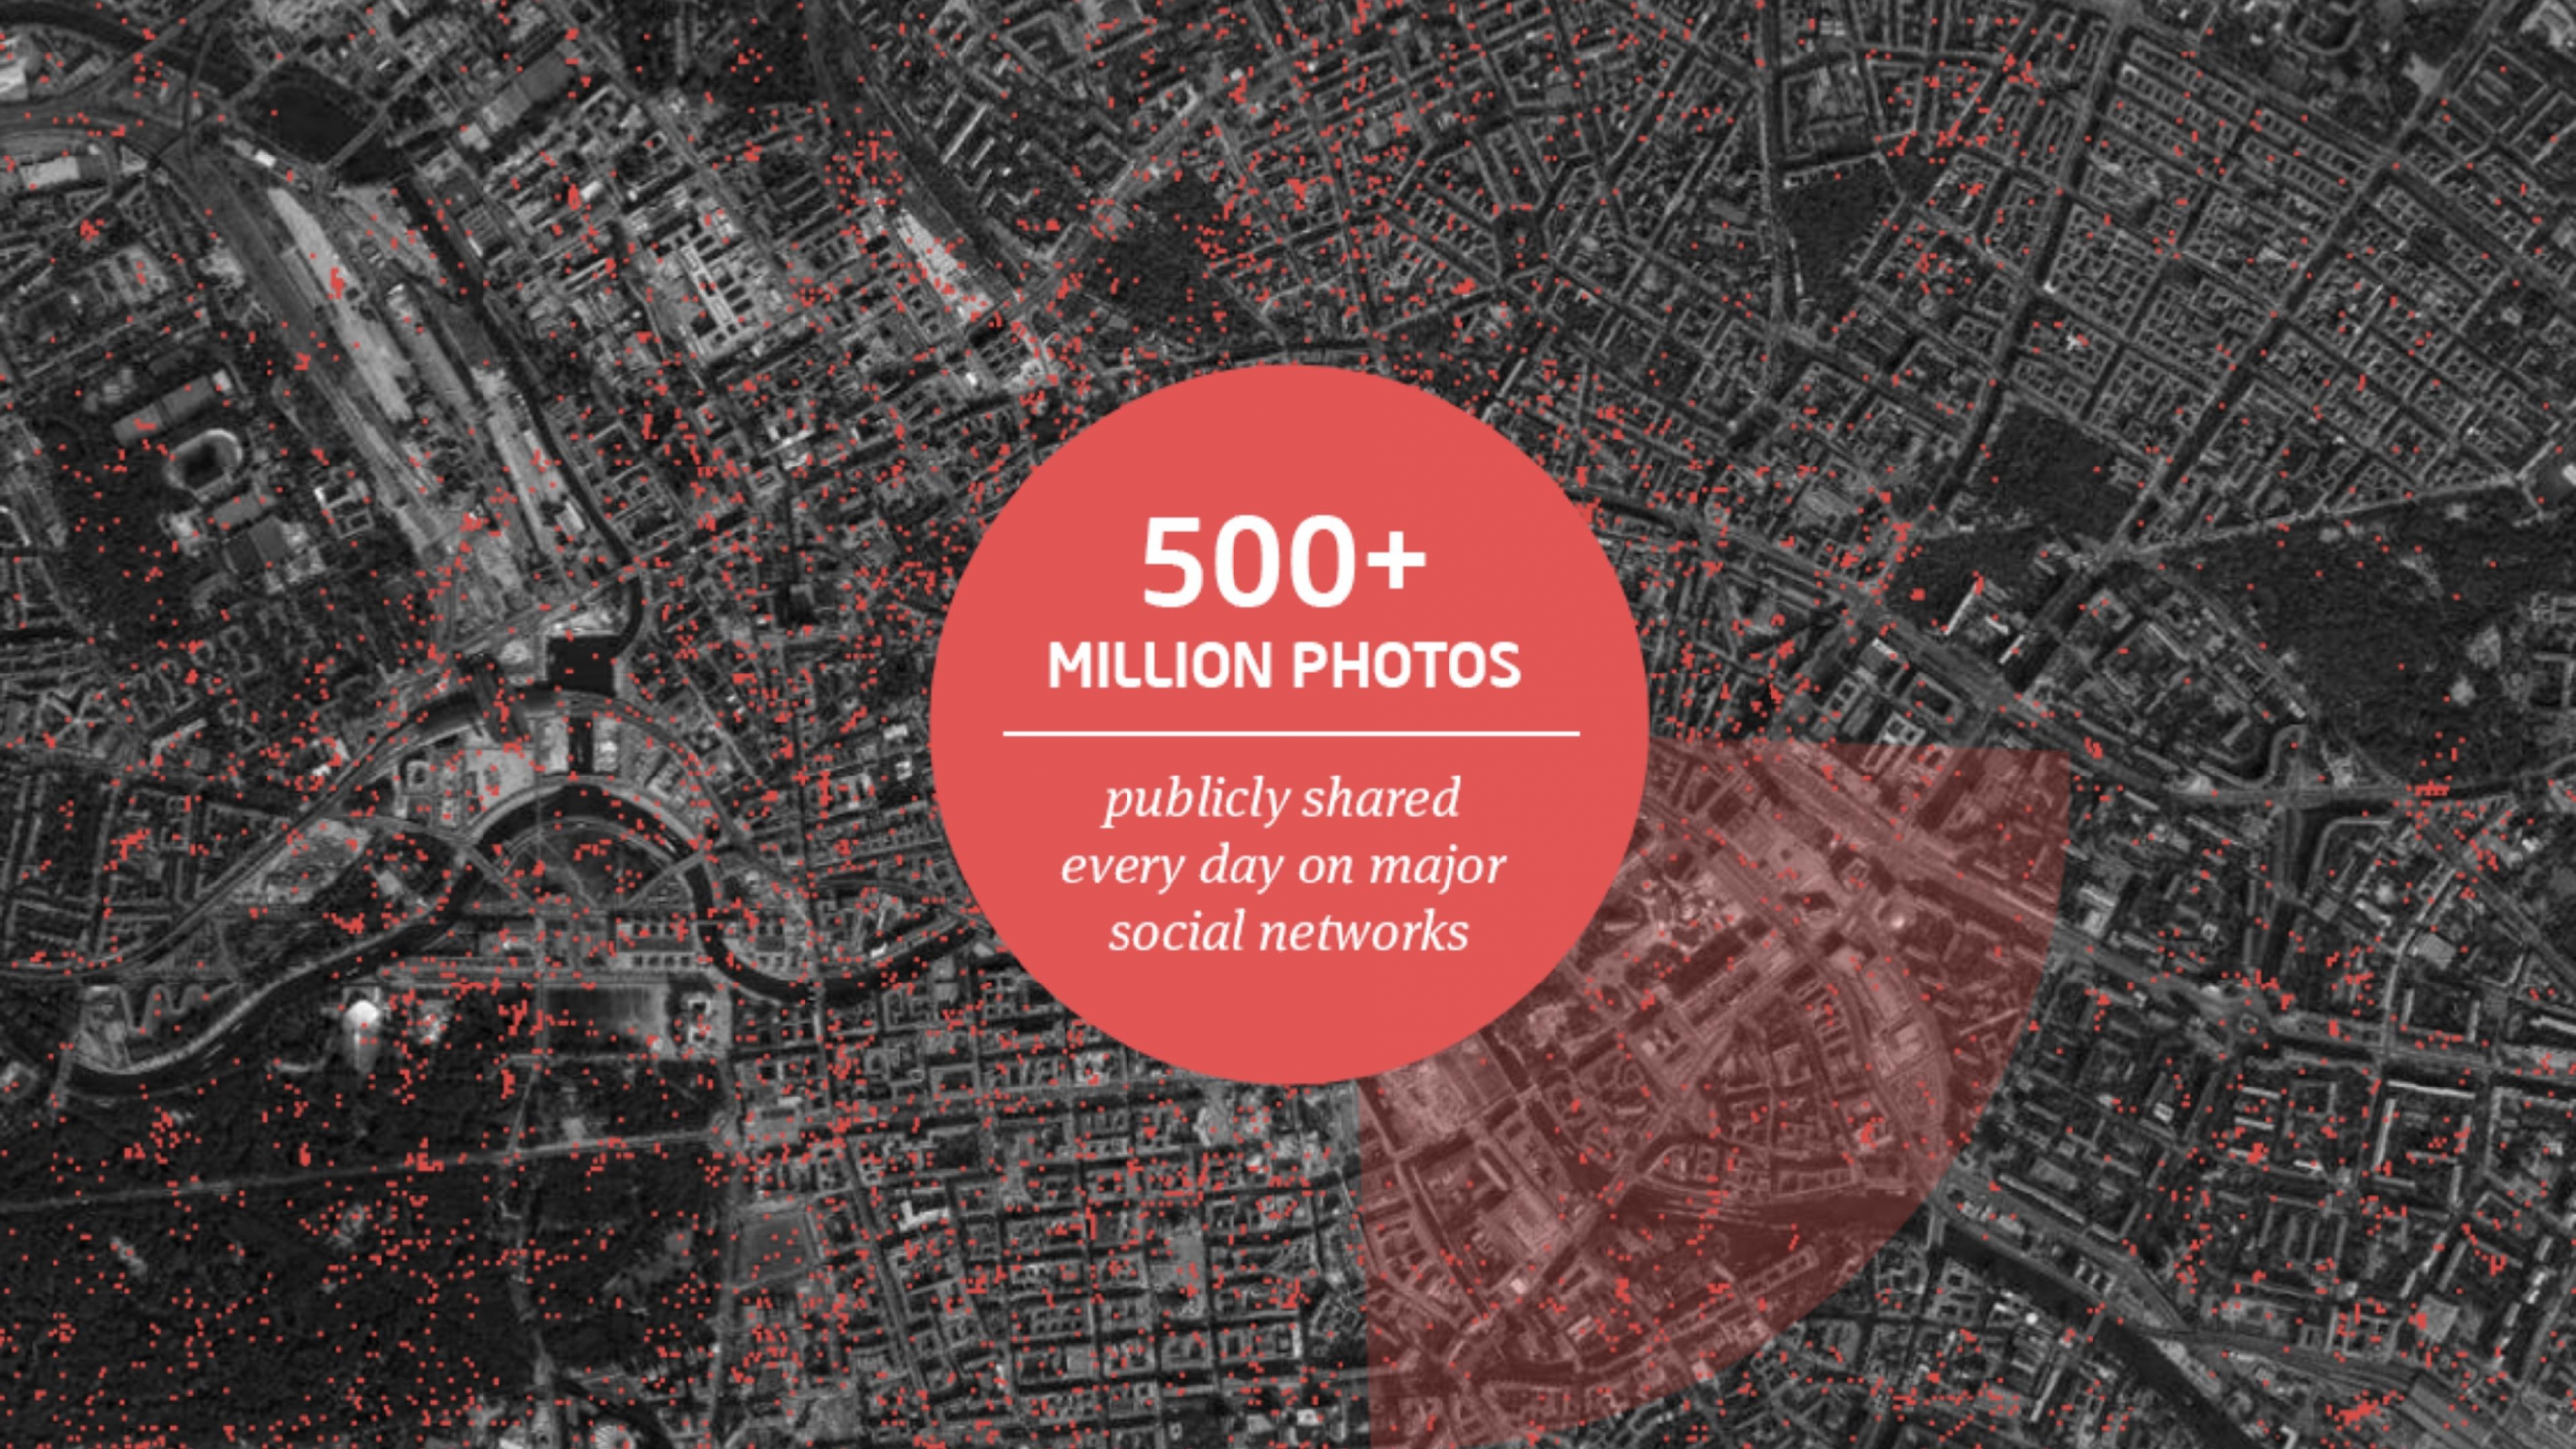 Standortkarte mit täglich in social networks geteilten Bilder. Hervorgehoben wird, dass über 500 Millionen Fotos täglich in den größten sozialen Netzwerken geteilt werden.